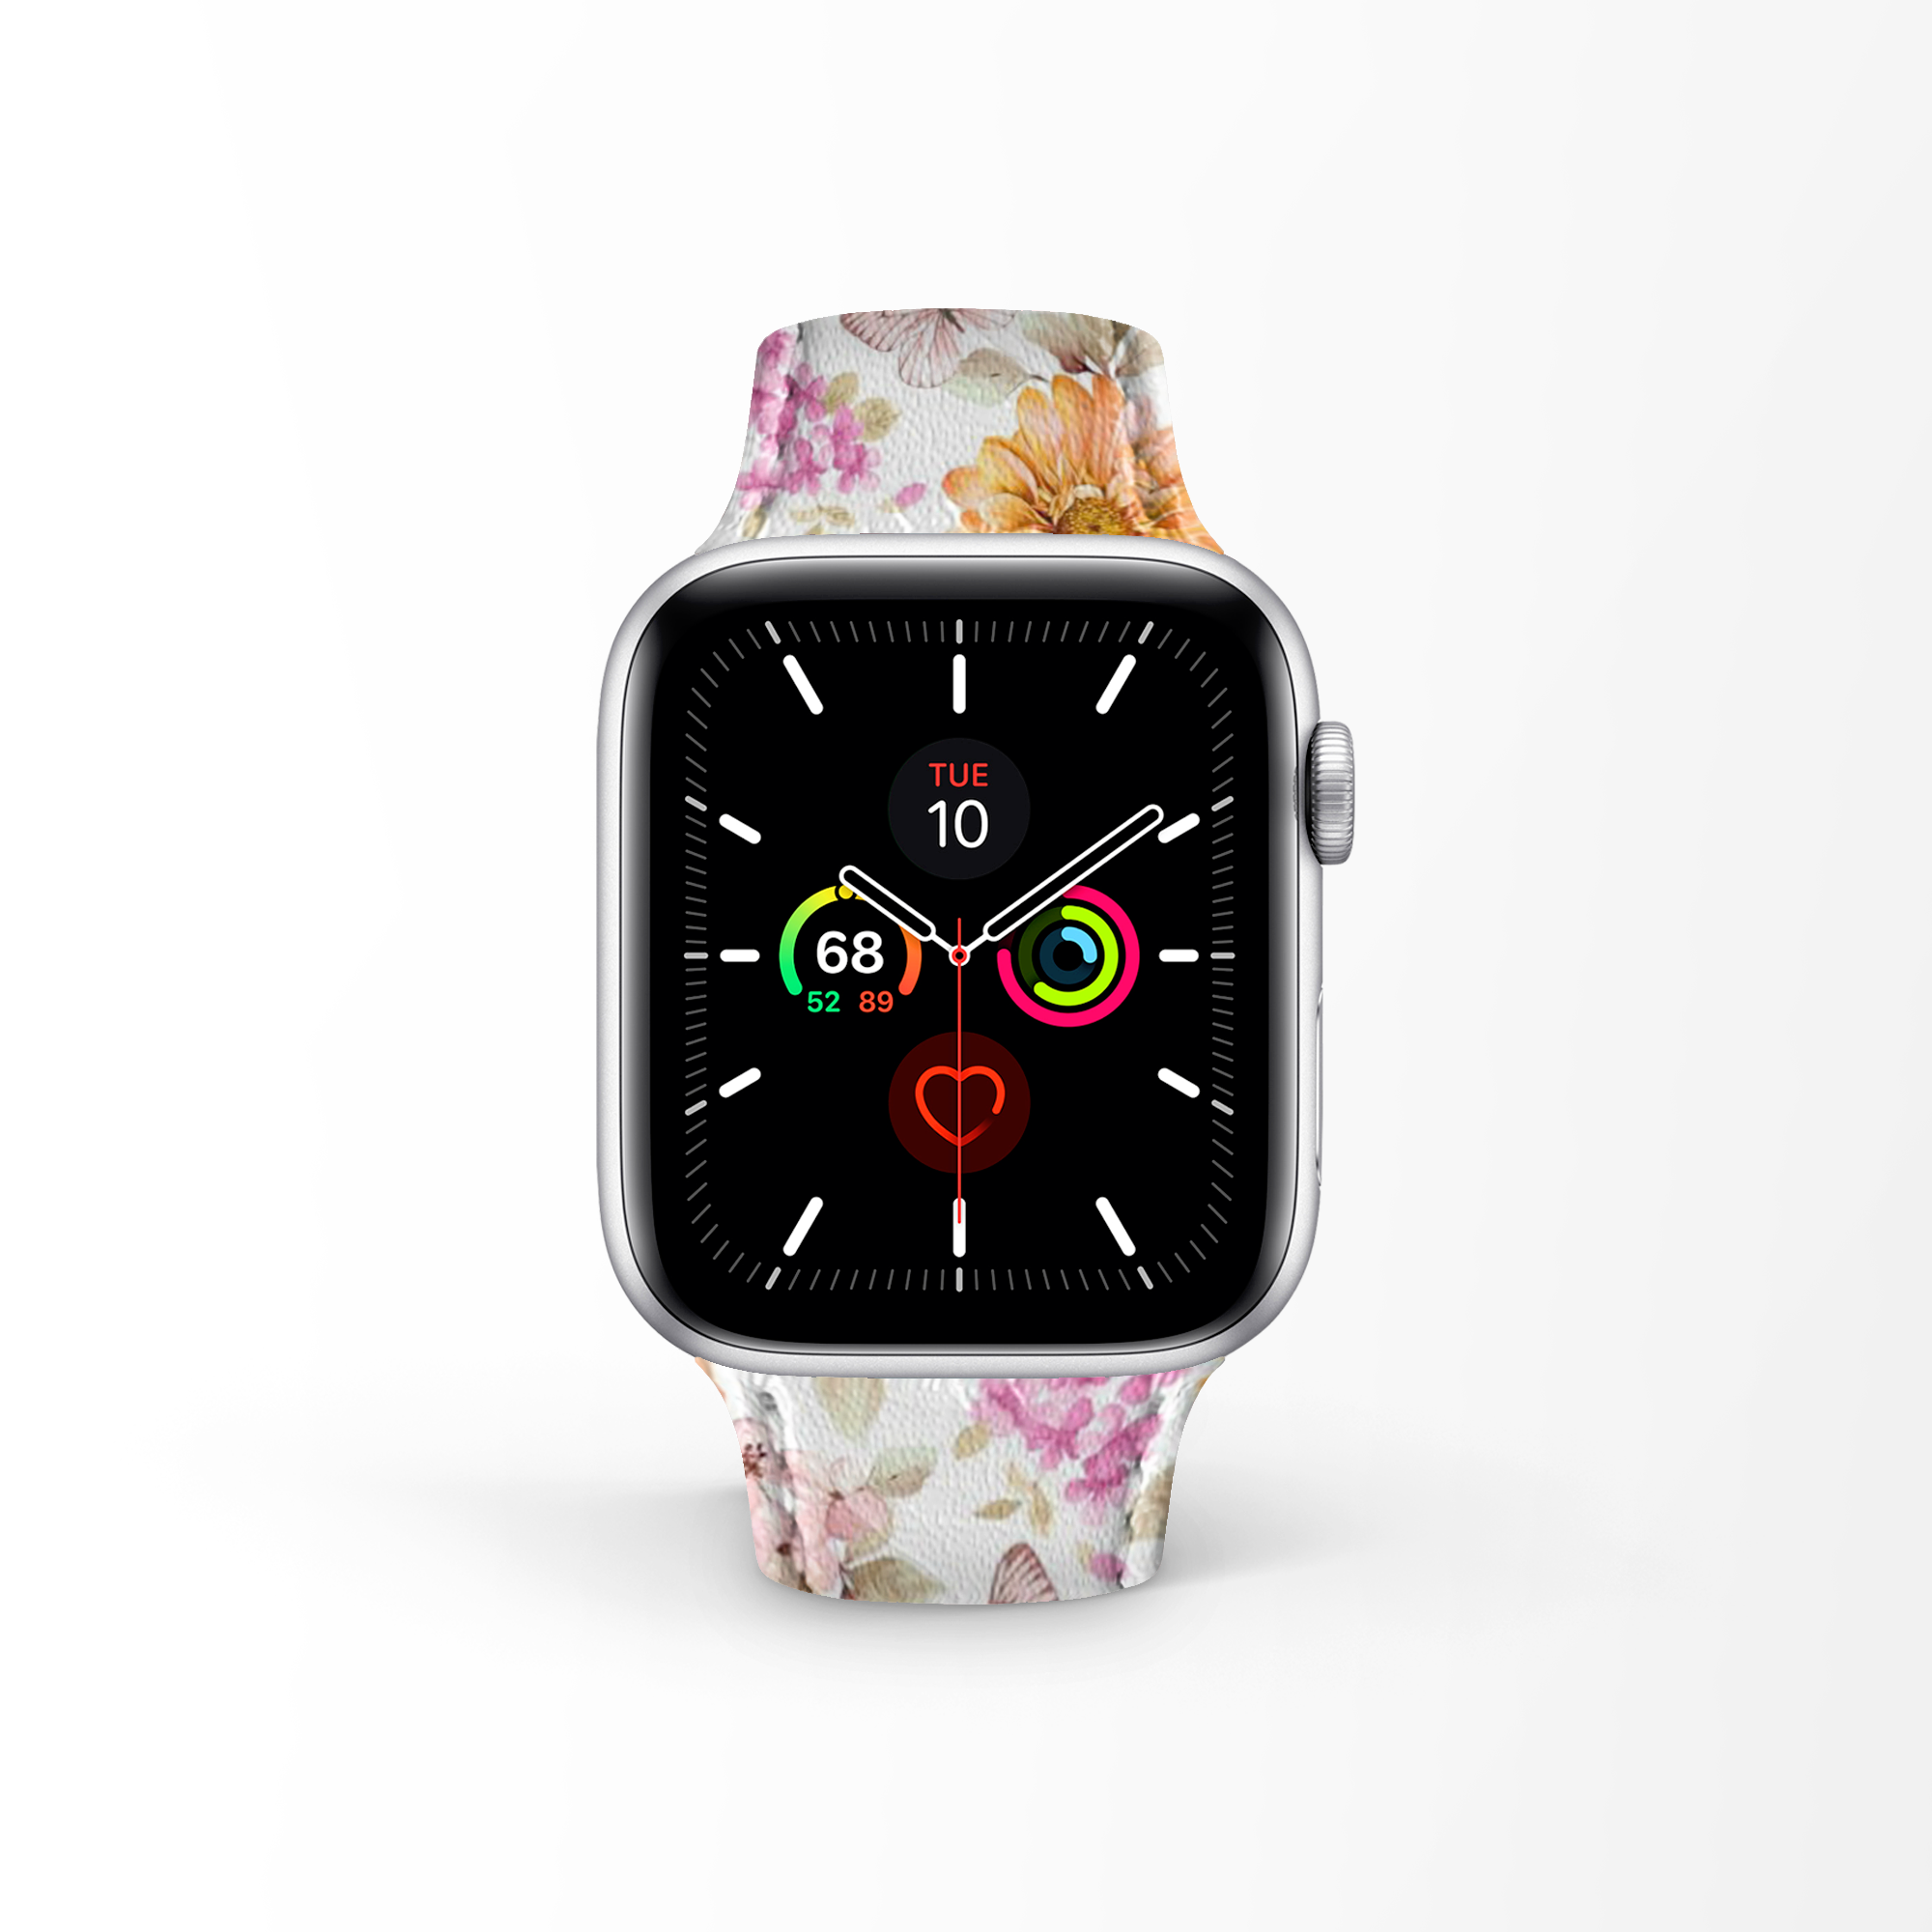 Apple Watch Premium Leather Strap Flower Series Design 01